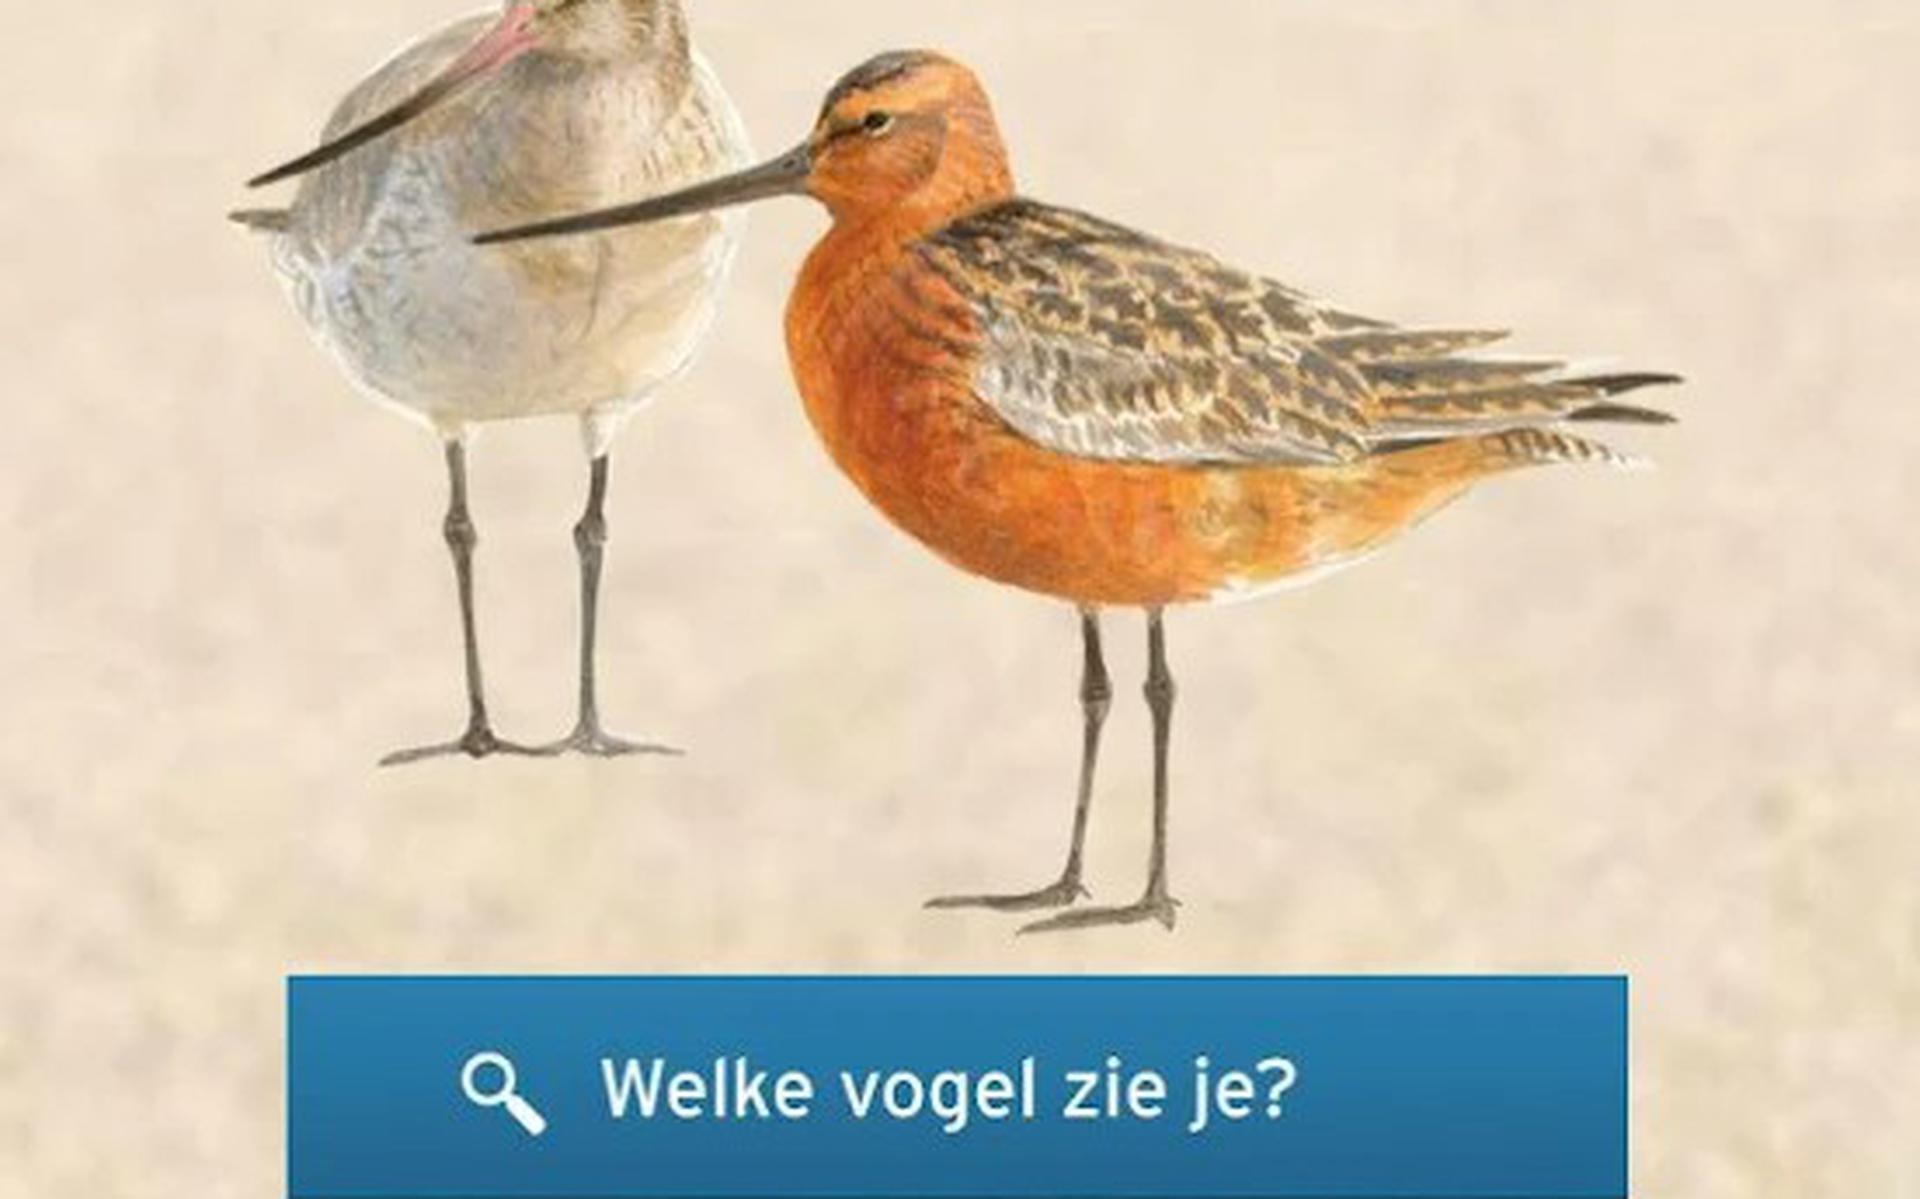 De app Wadvogel.